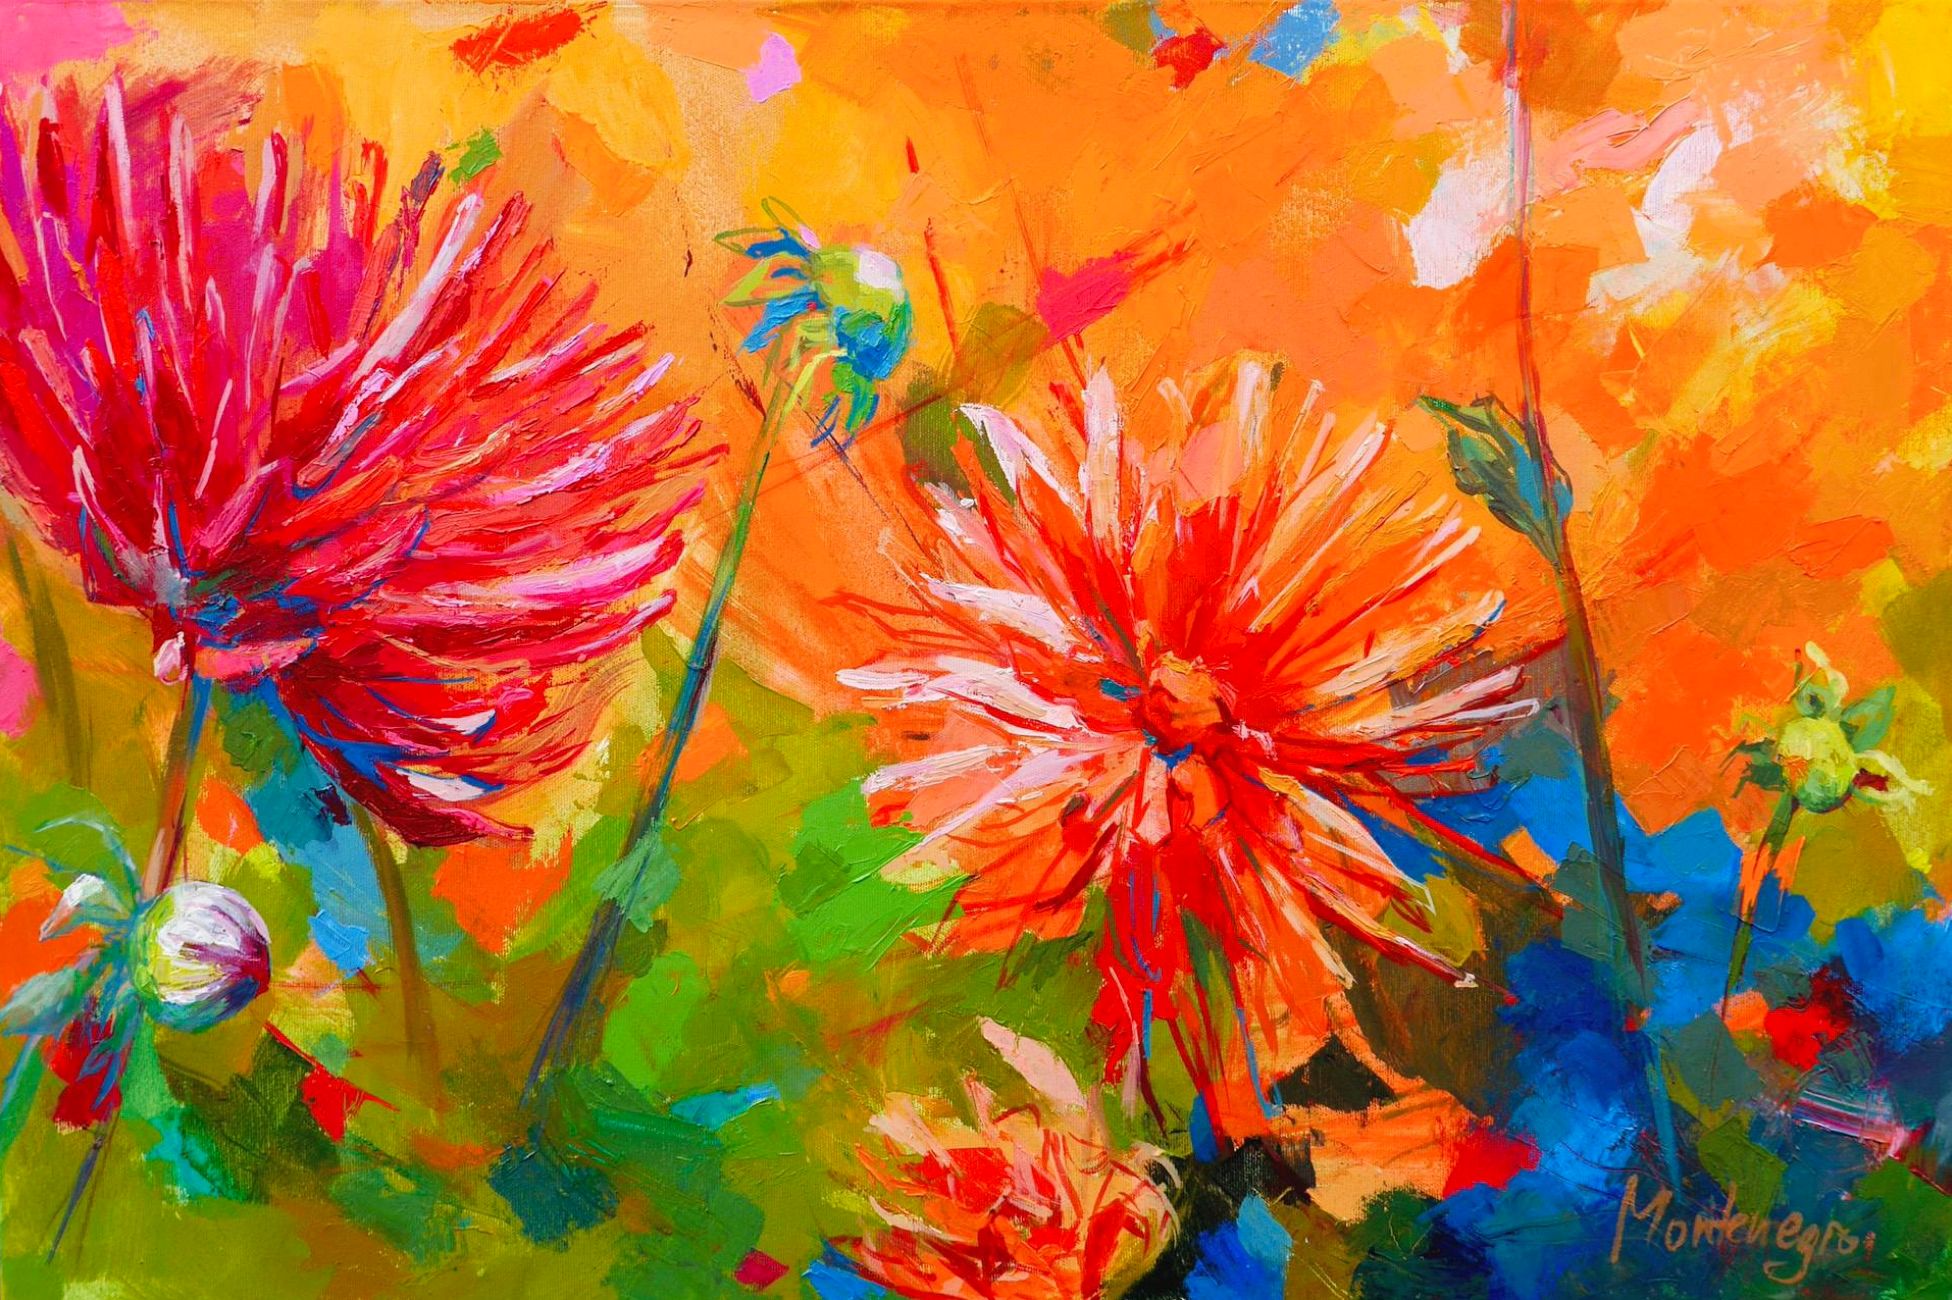 Miriam Montenegro peinture expressionniste orange fleurs rouges sur fond coloré